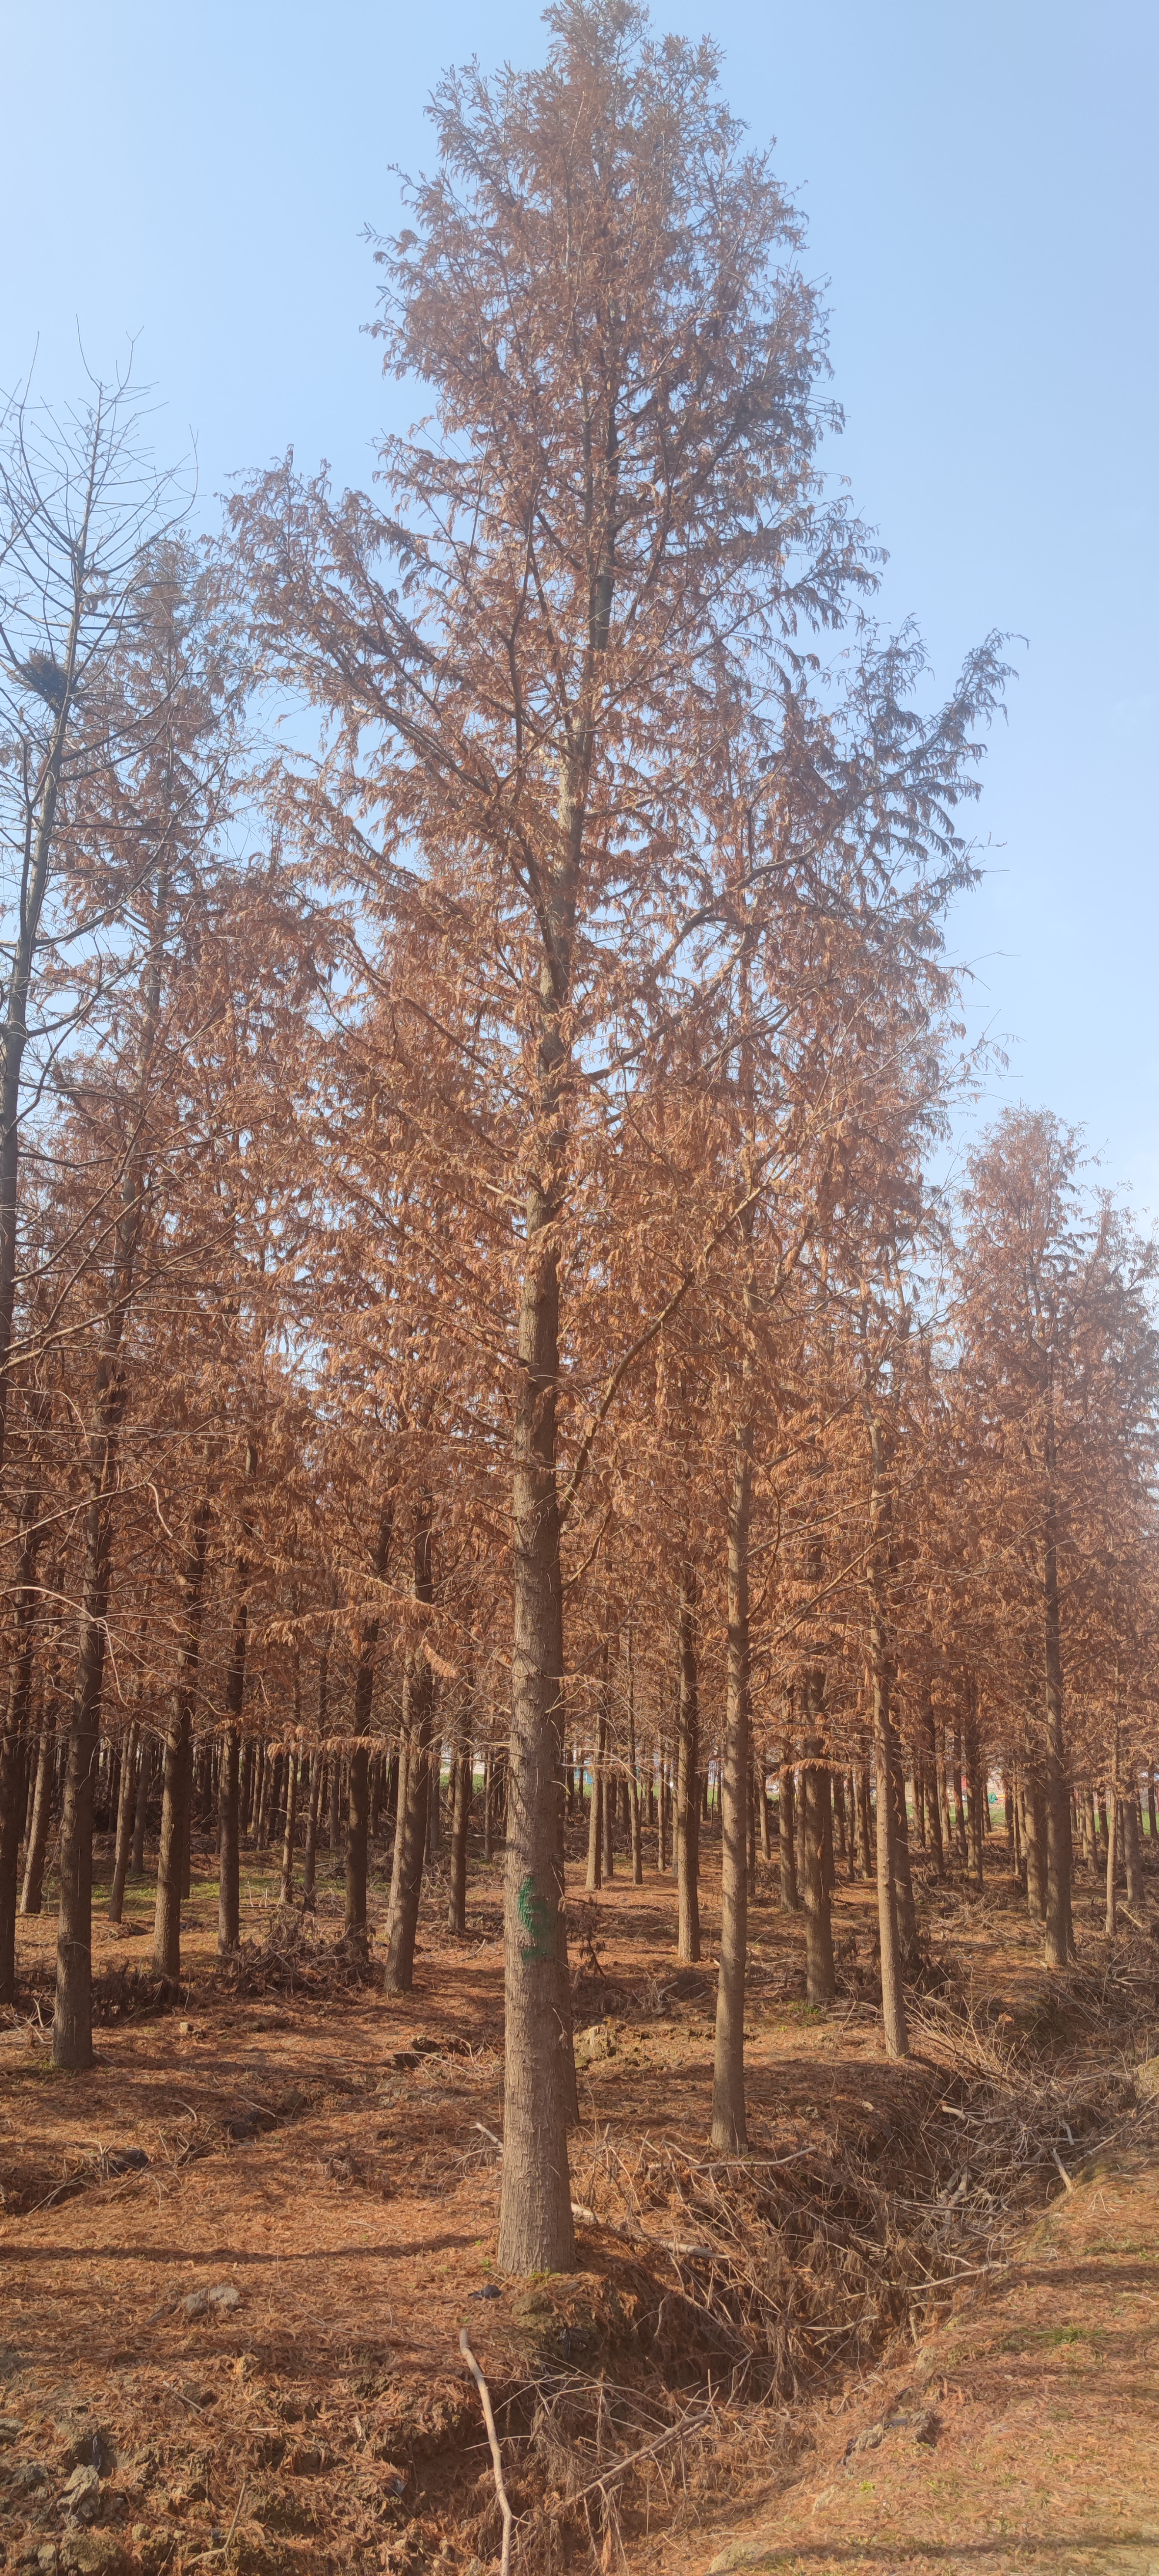 江苏盐城的中山杉开始慢慢变红,挺拔的中山杉生长在华东花木基地